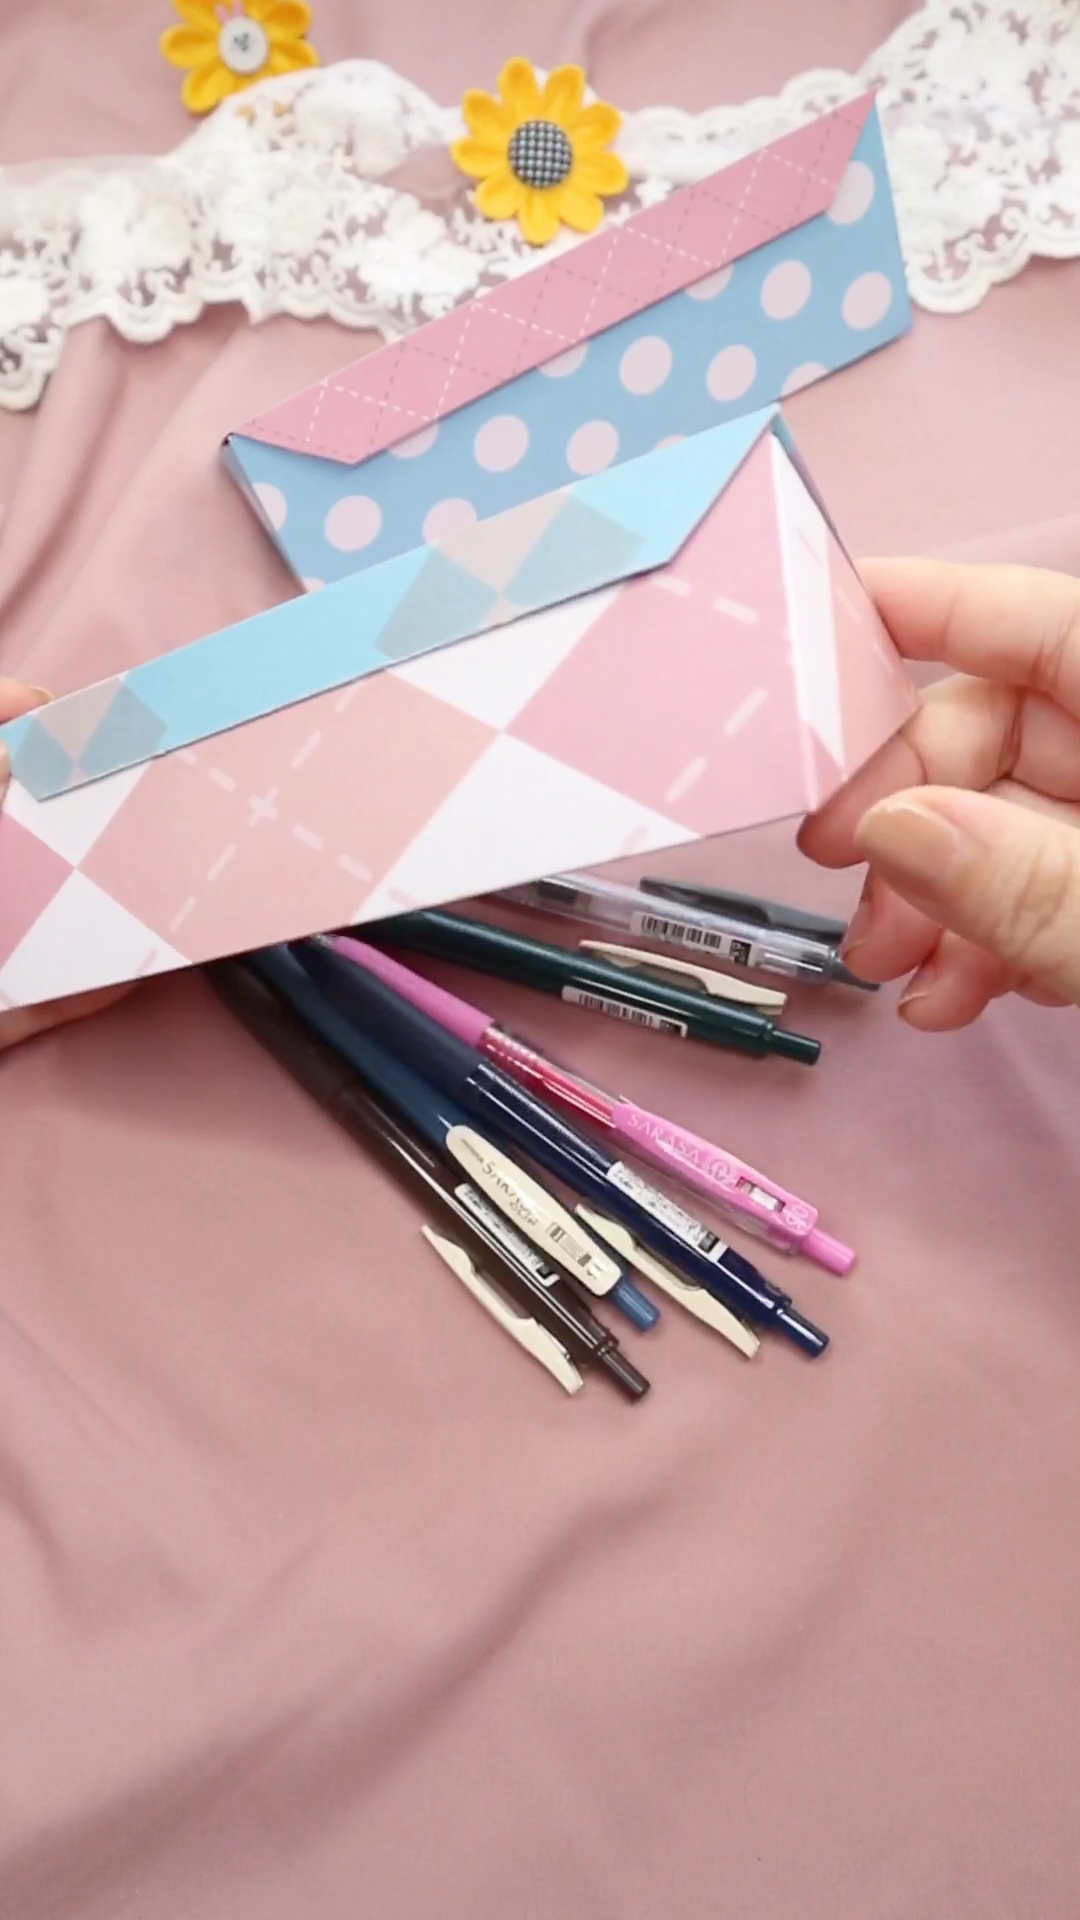 手工制作用一张纸就能做出来的笔盒三角形的笔盒很特别特别的好看